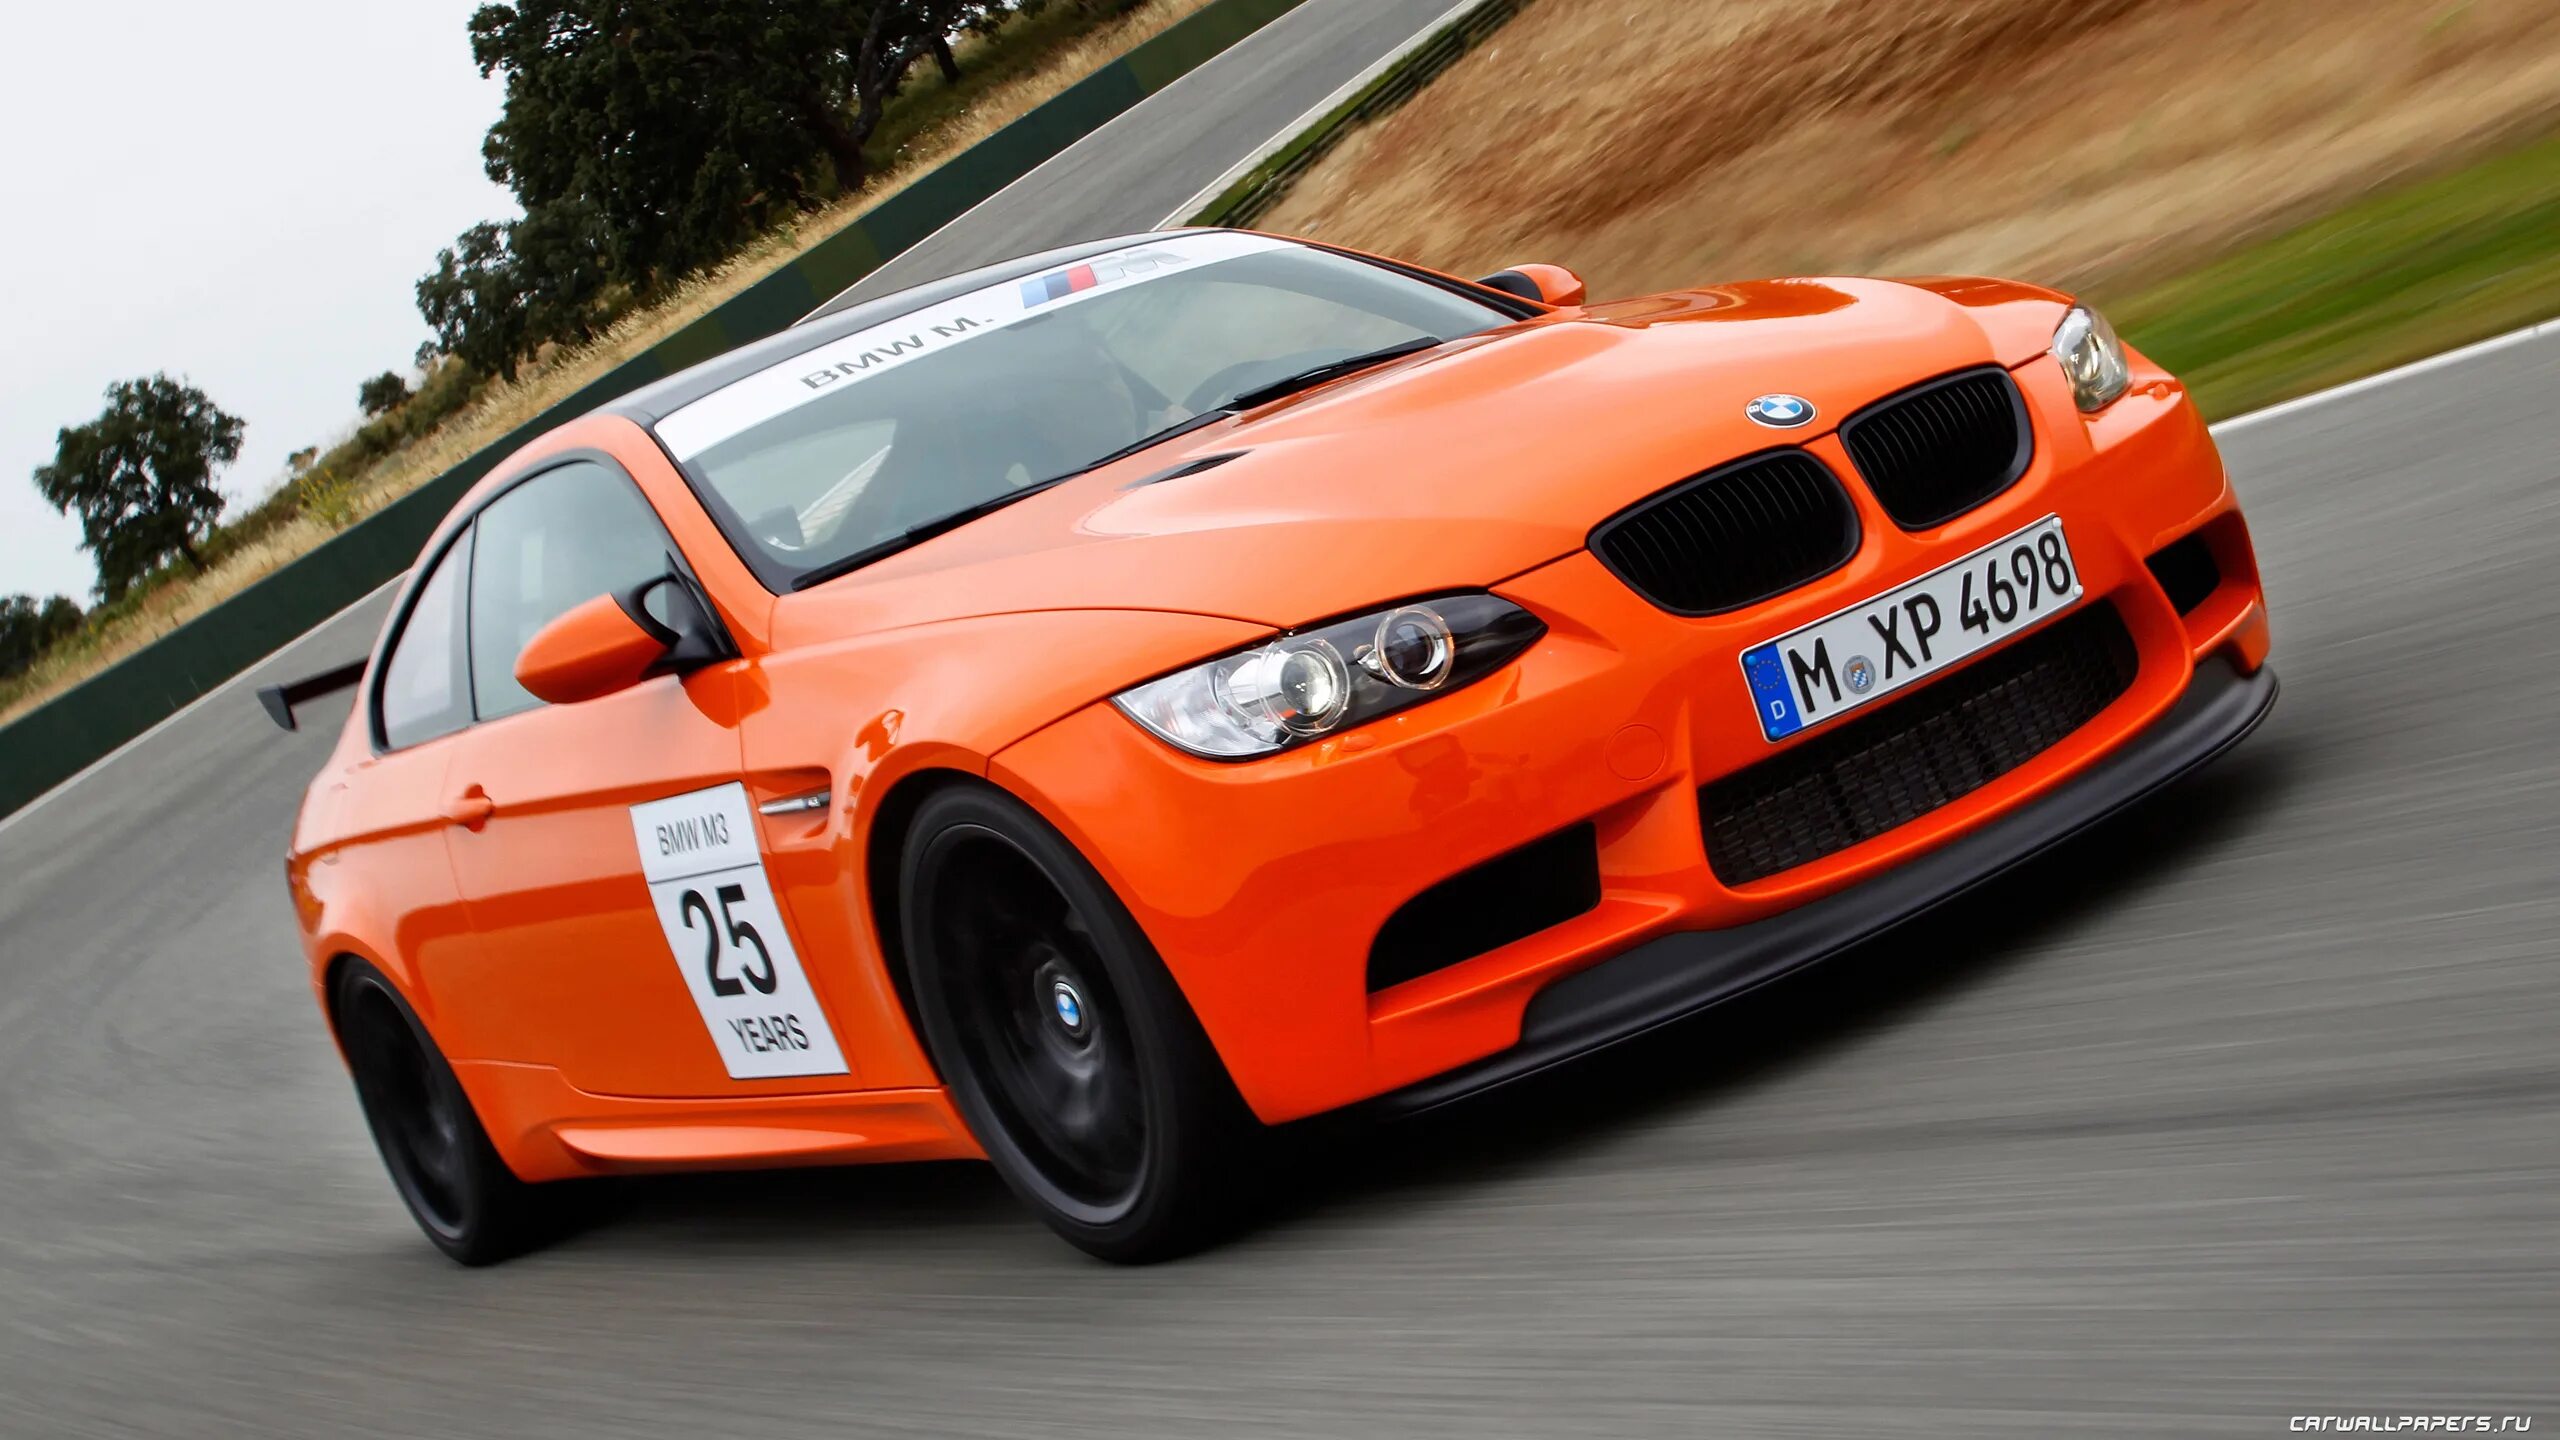 Gts 3 pro. BMW m3 GTS 2010. BMW m3 e92. BMW m3 e92 GTS. 2010 BMW e92 m3 GTS.